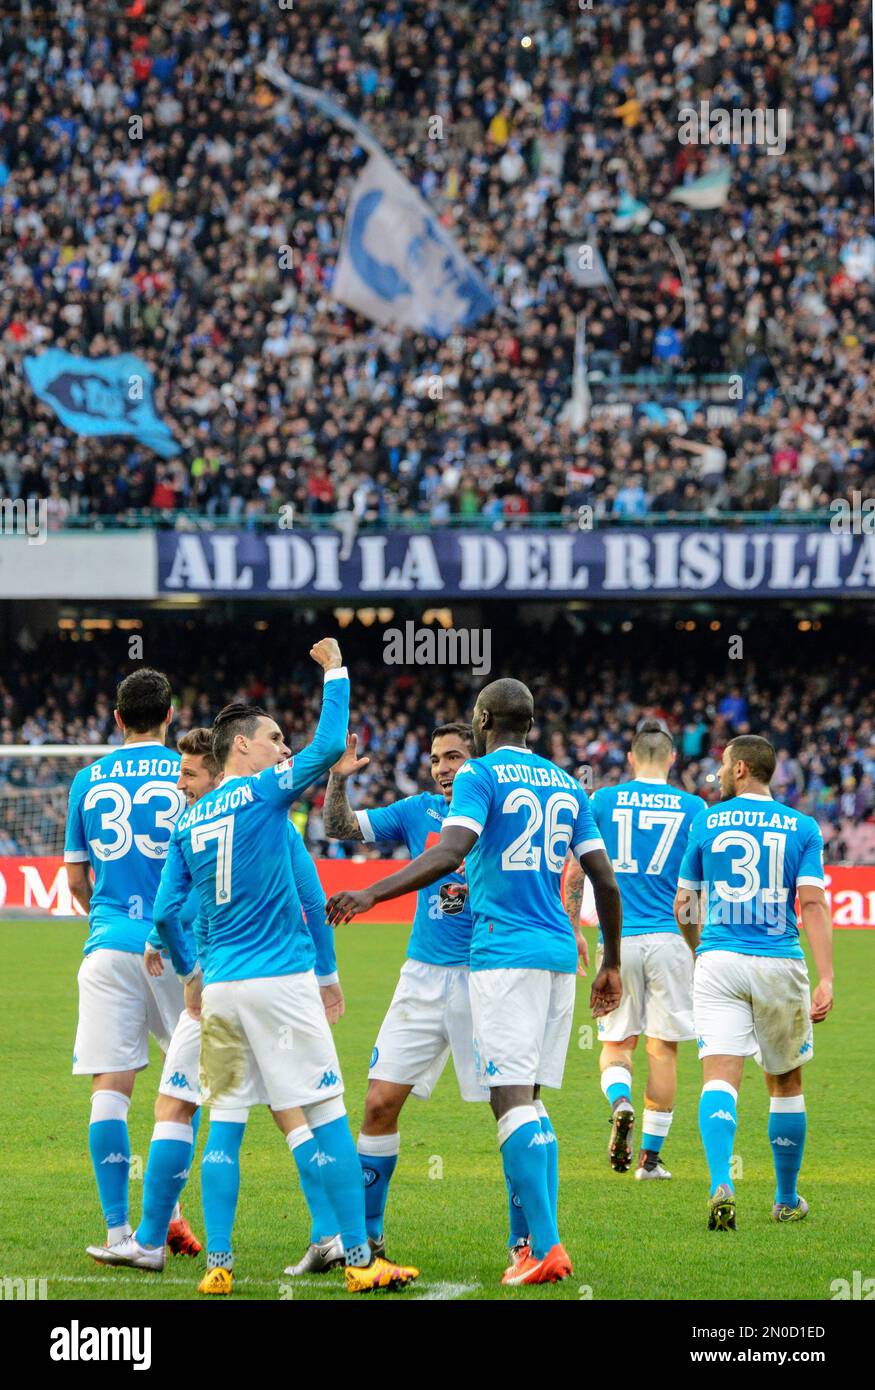 Napoli's José María Callejón celebrates after scoring during a Serie A ...